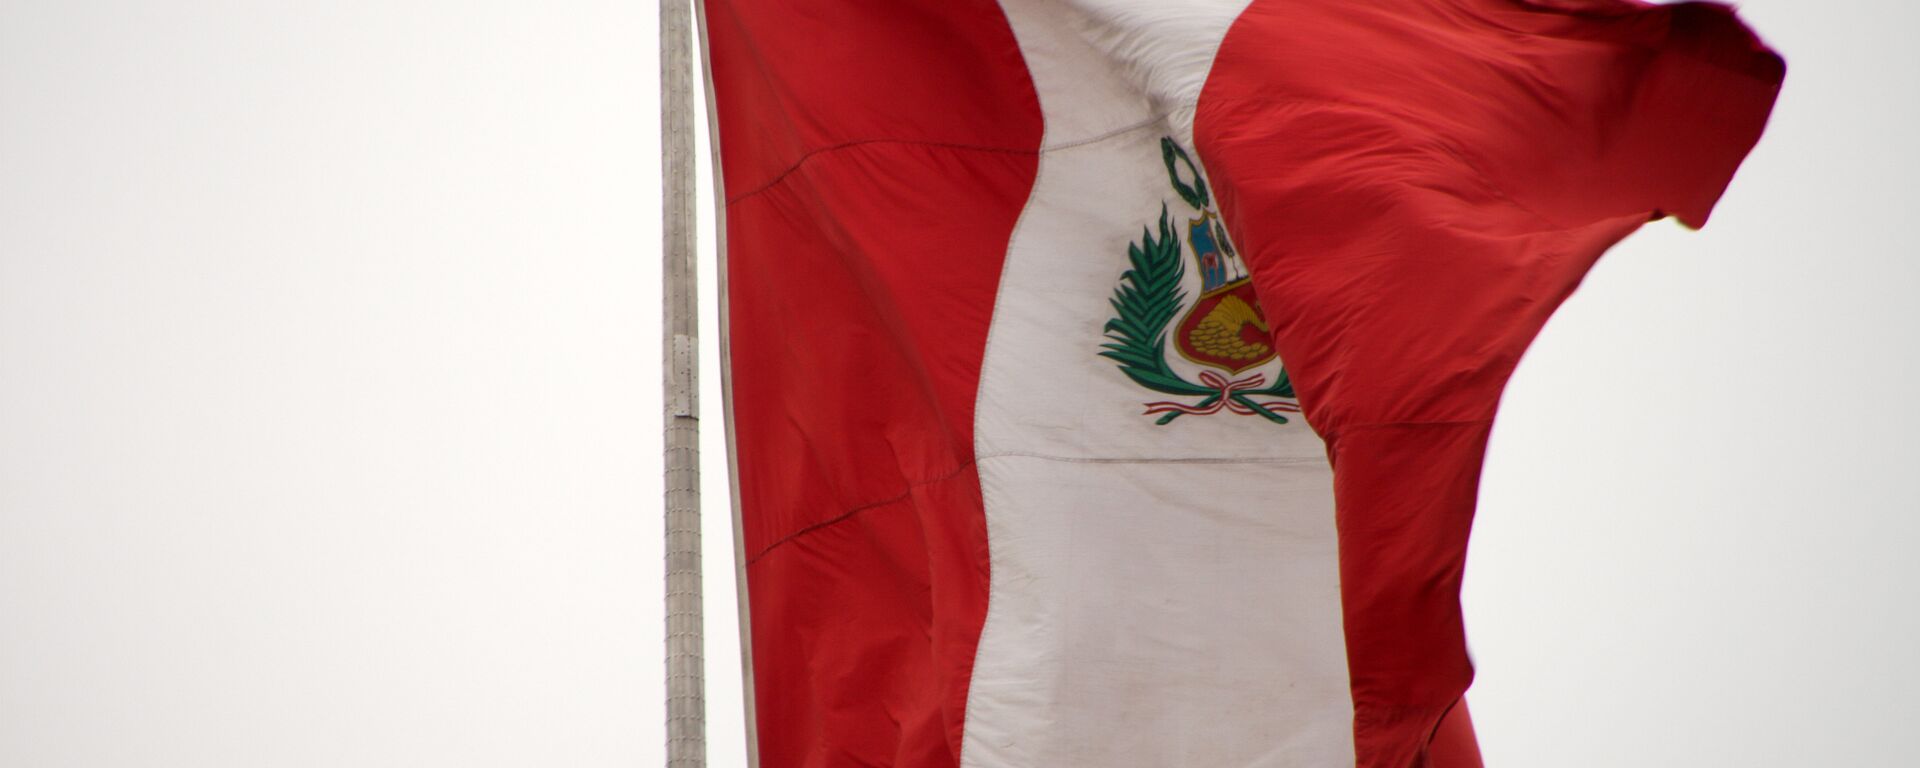 La bandera de Perú - Sputnik Mundo, 1920, 04.02.2021